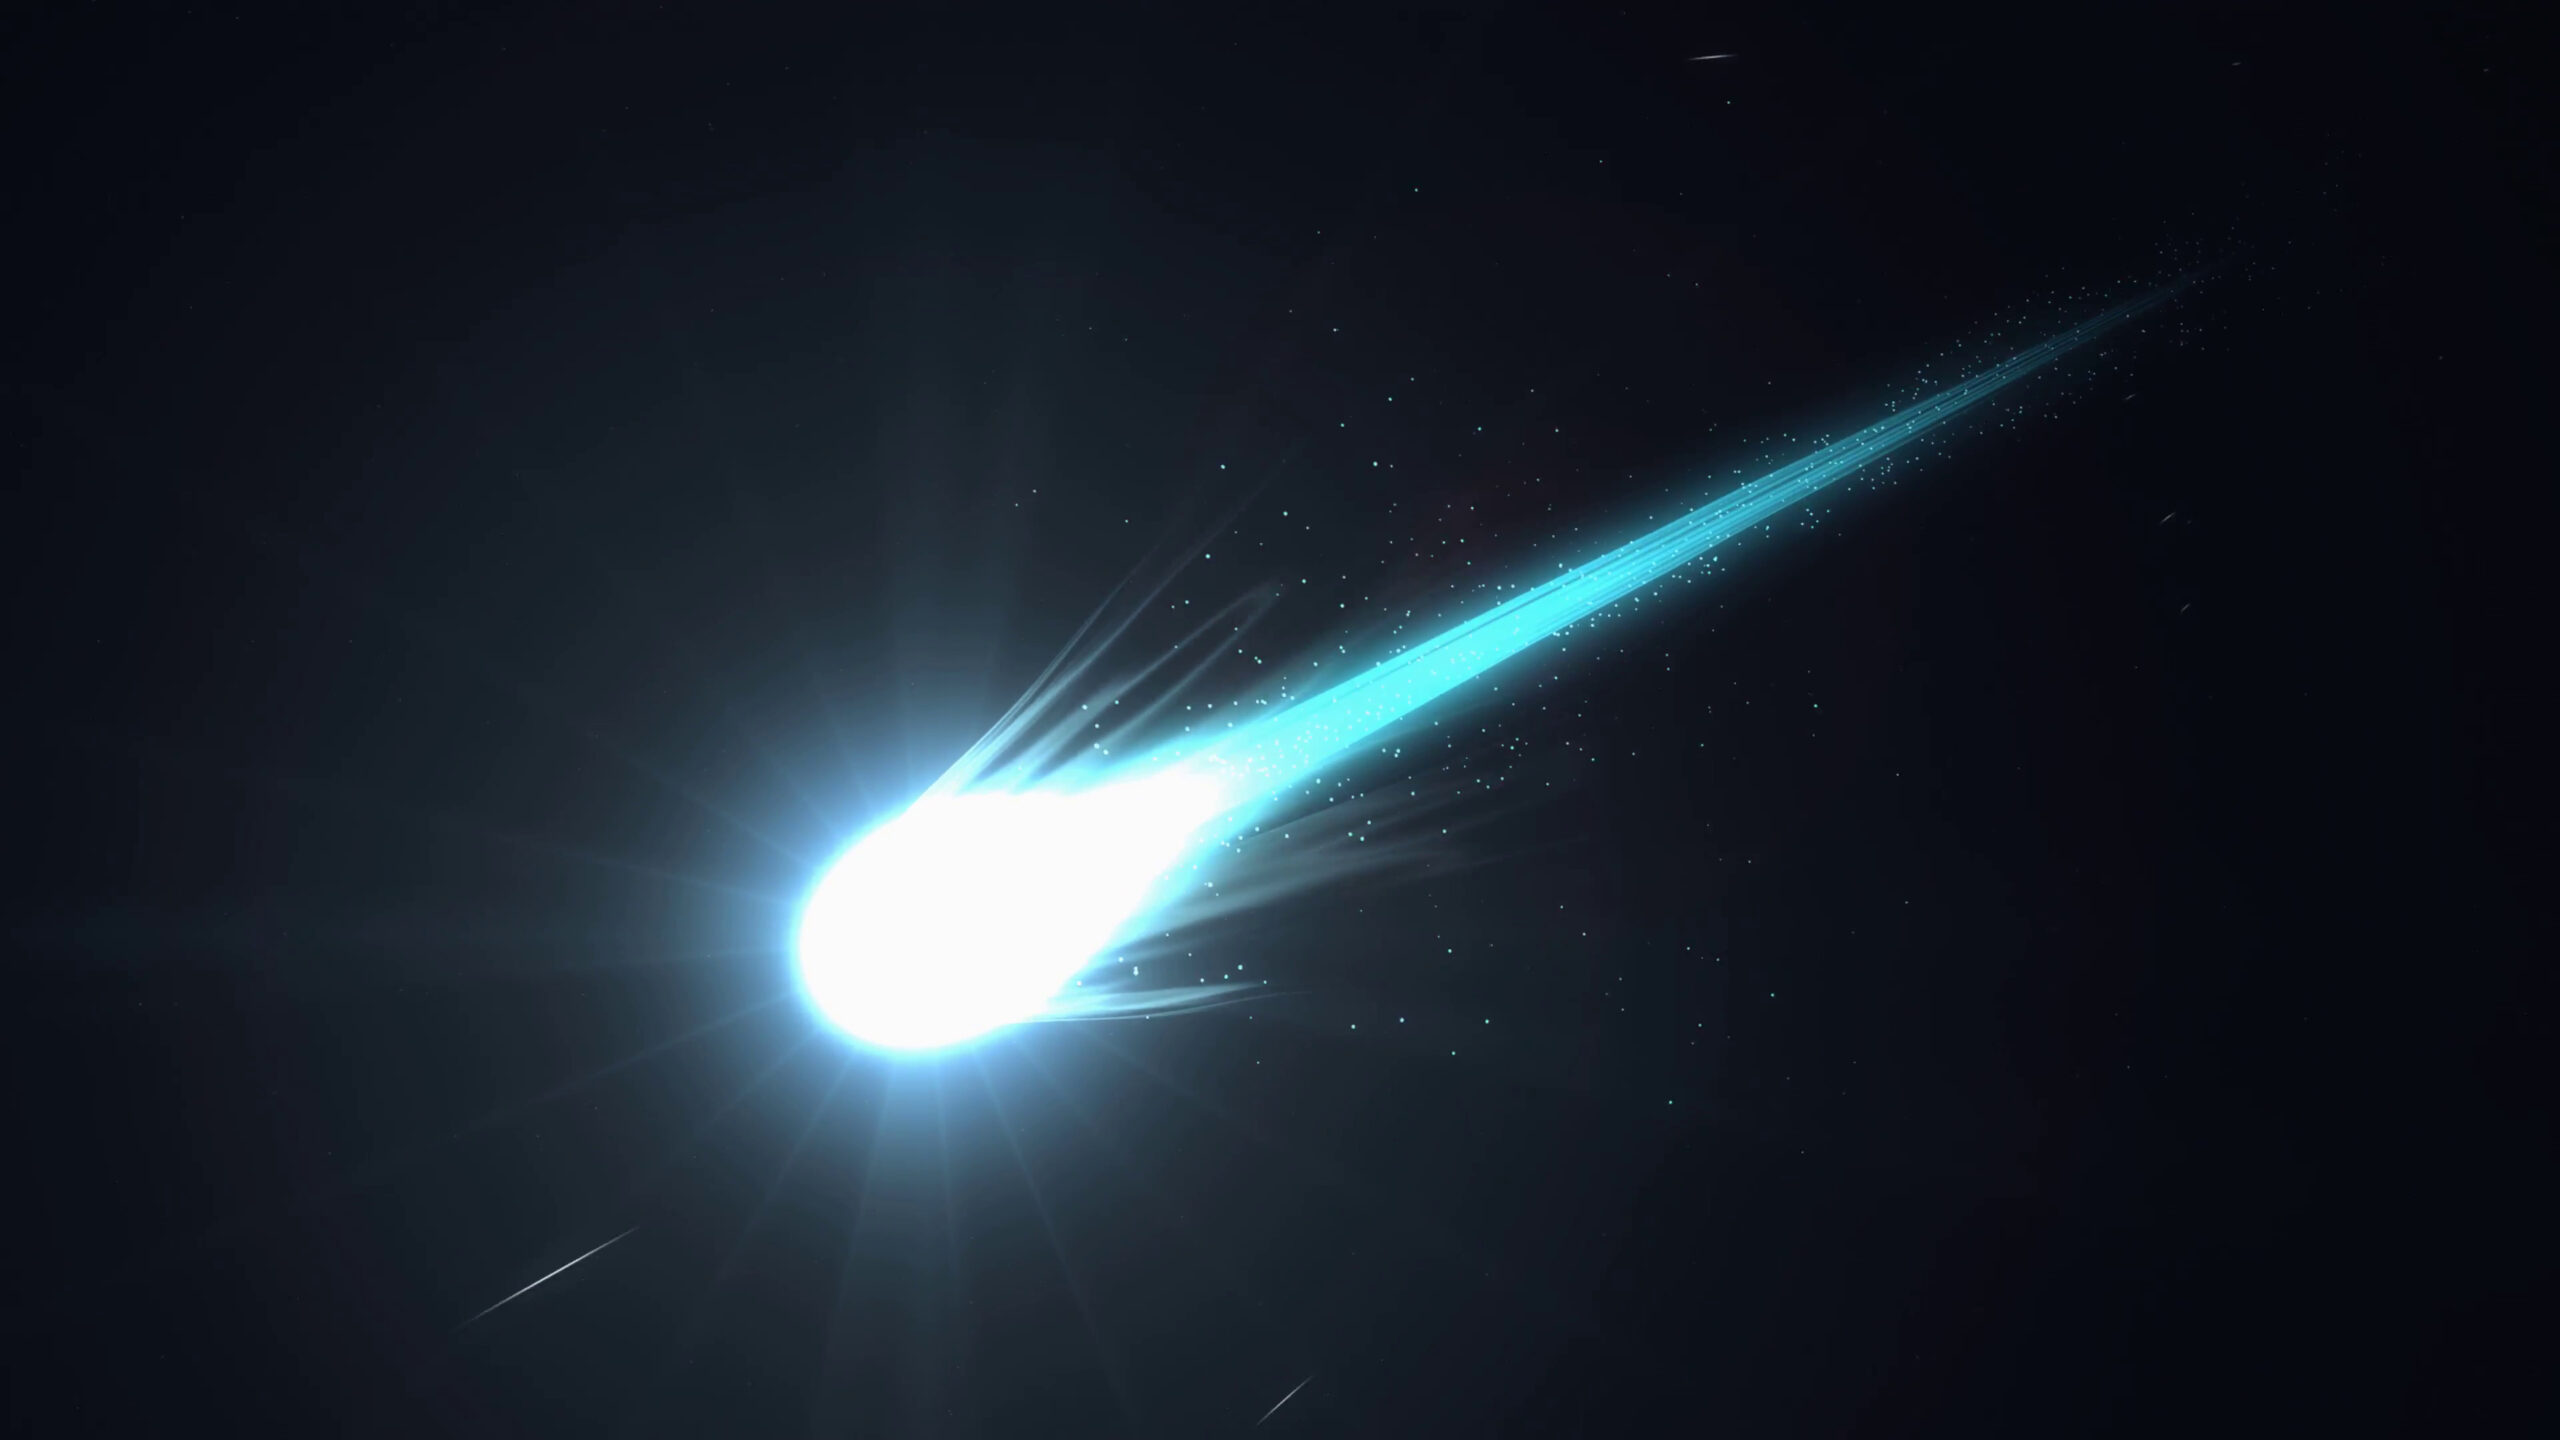 Descubren nuevos datos sobre un asteroide que podría chocar contra la Tierra sin peligro